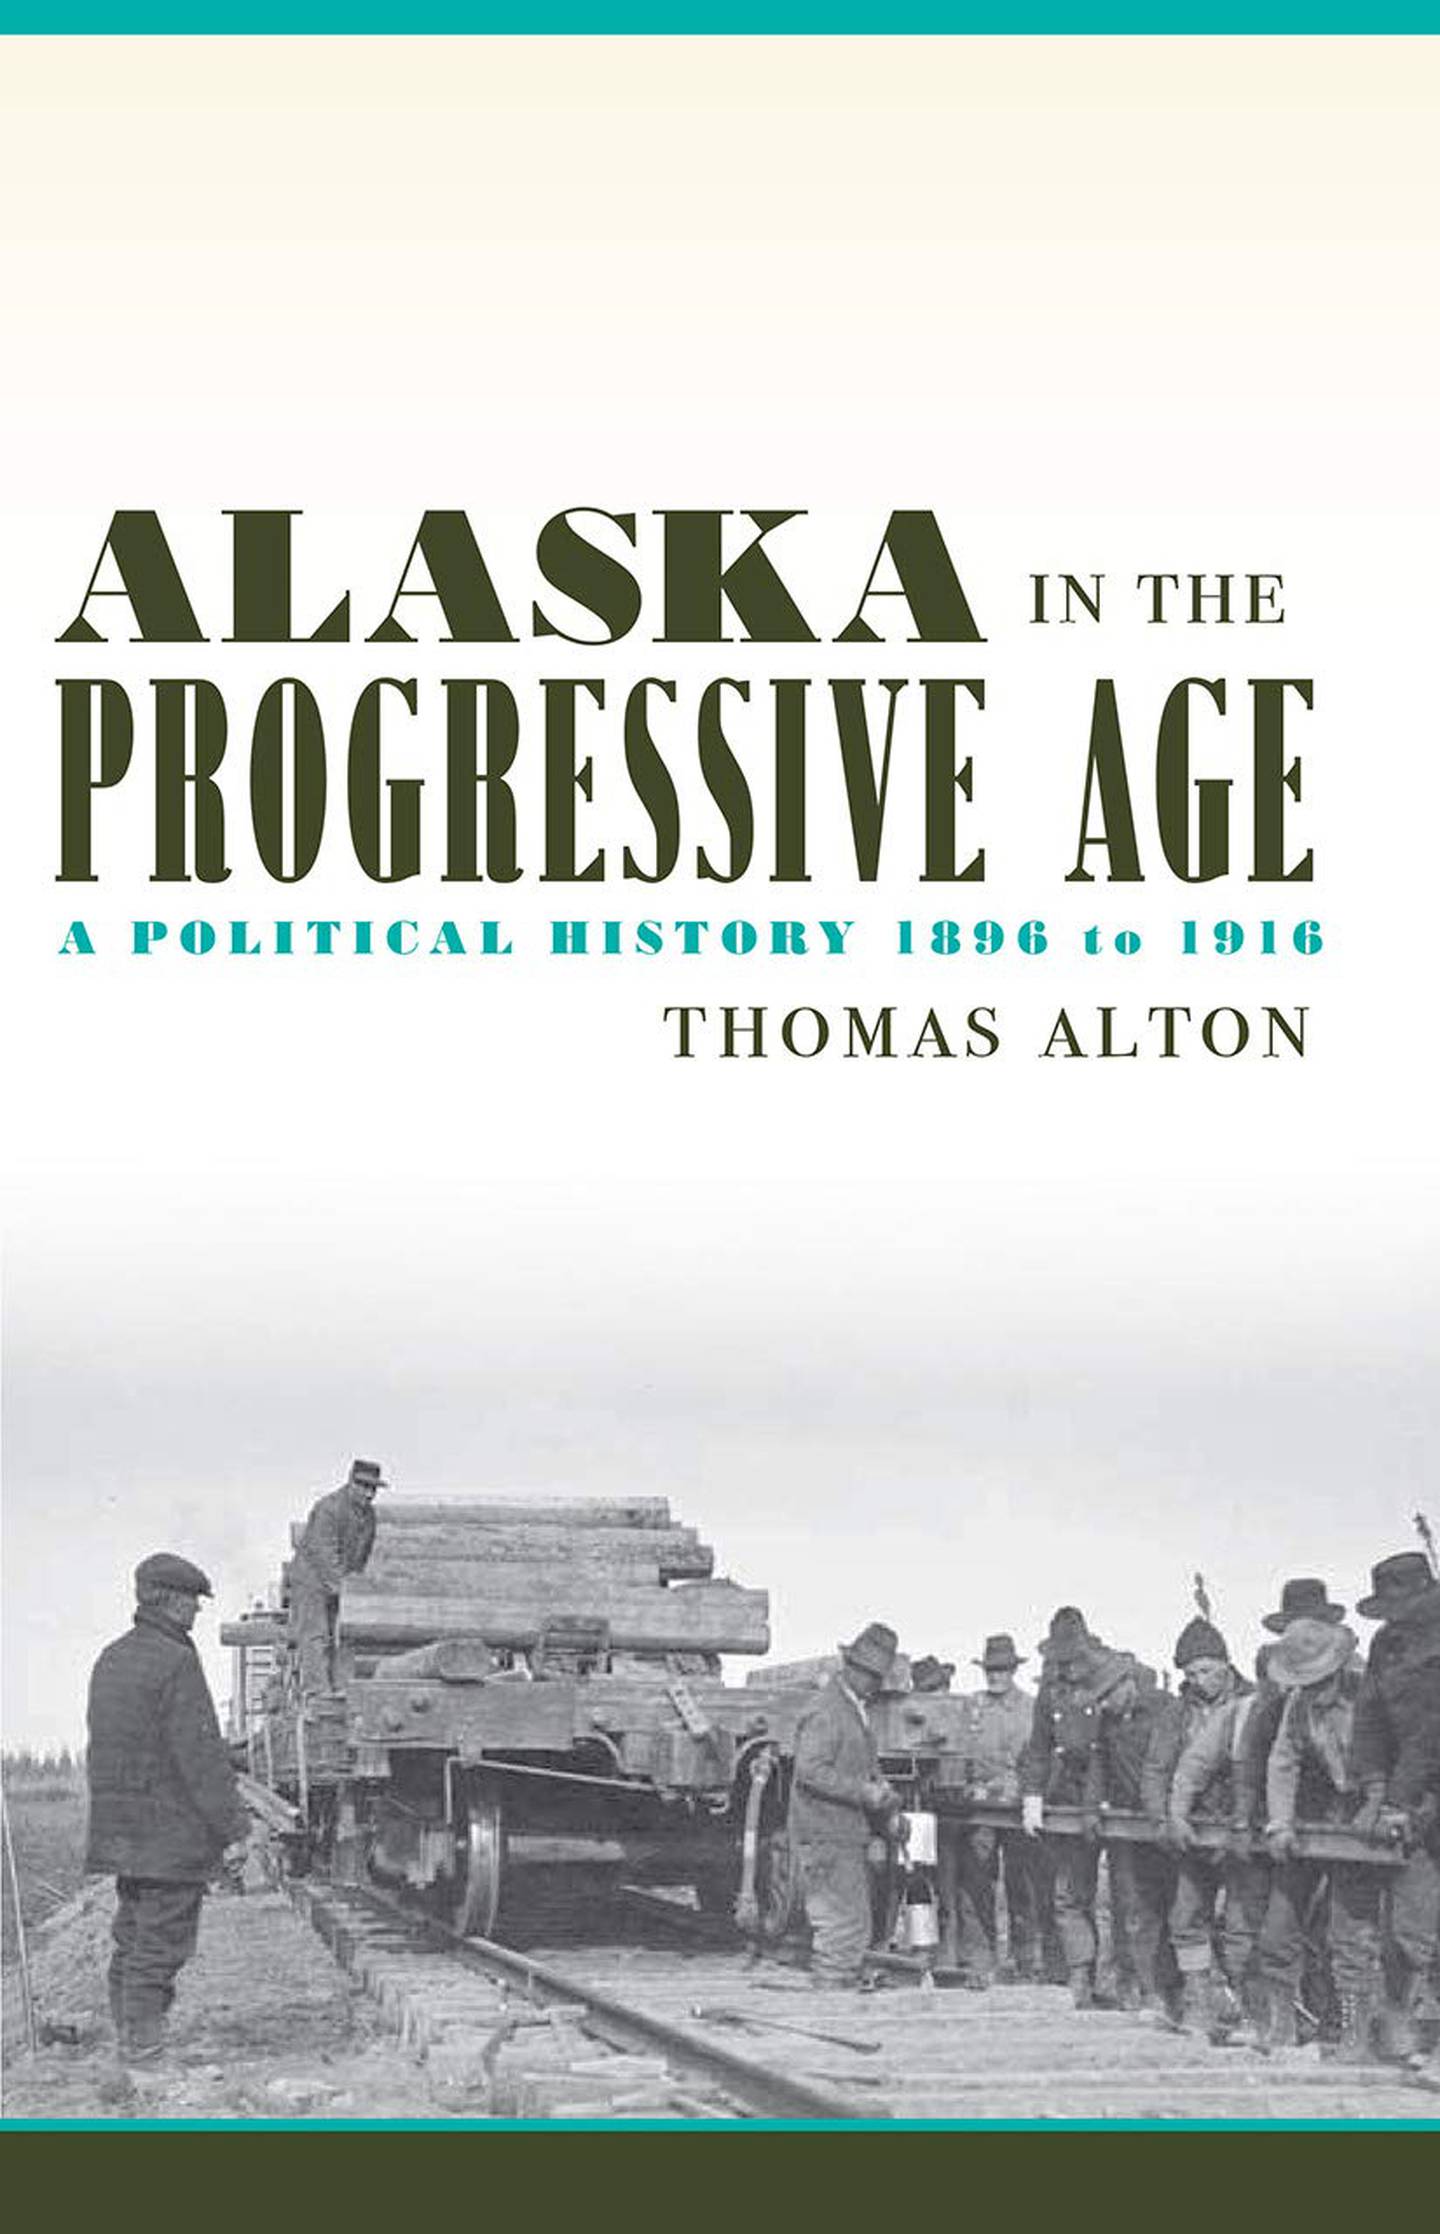 Alaska in the Progressive Age: A Political History 1896 to 1916